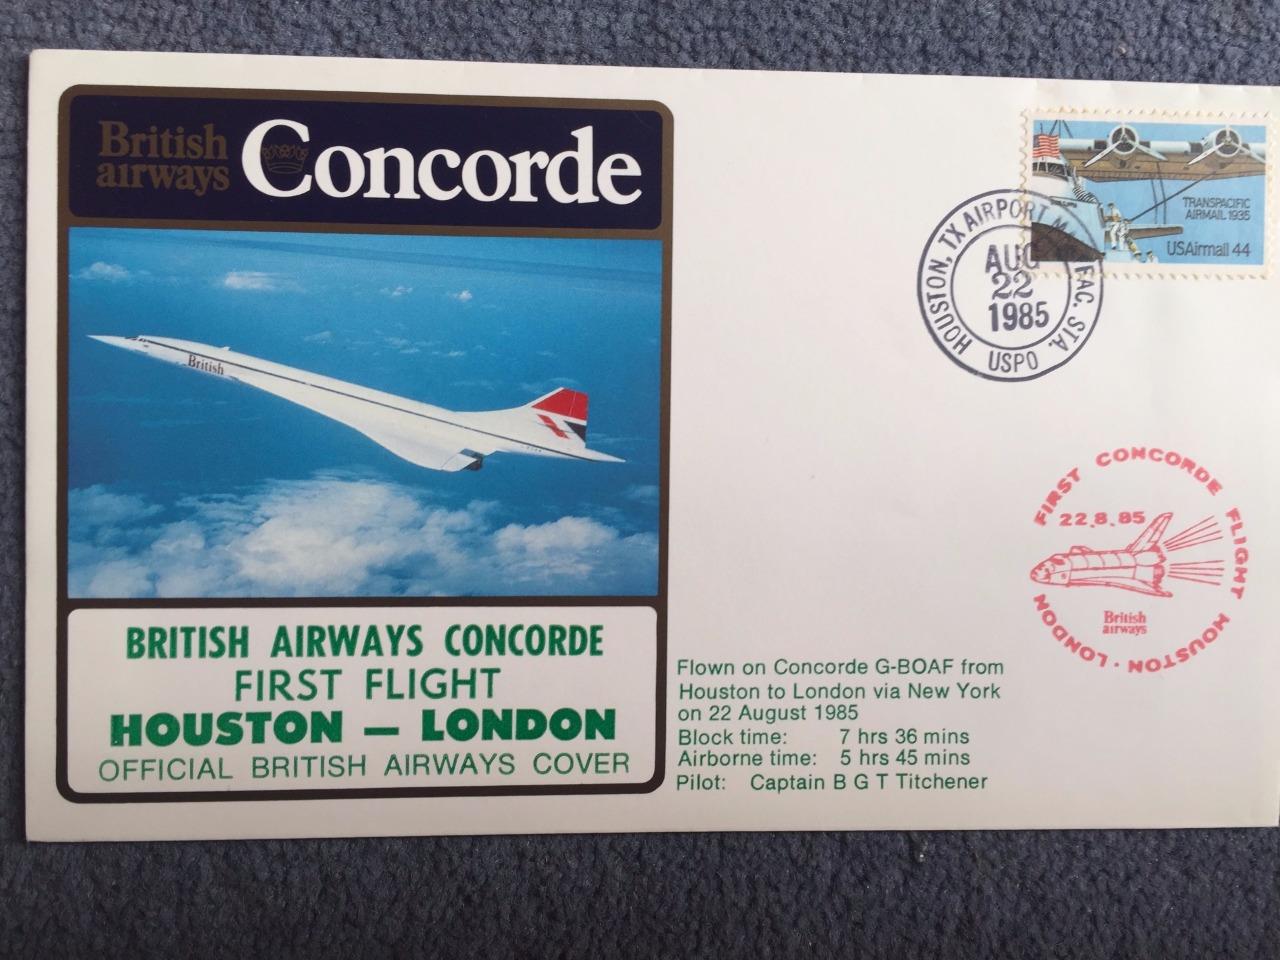 British Airways Concorde First Flight Houston - London